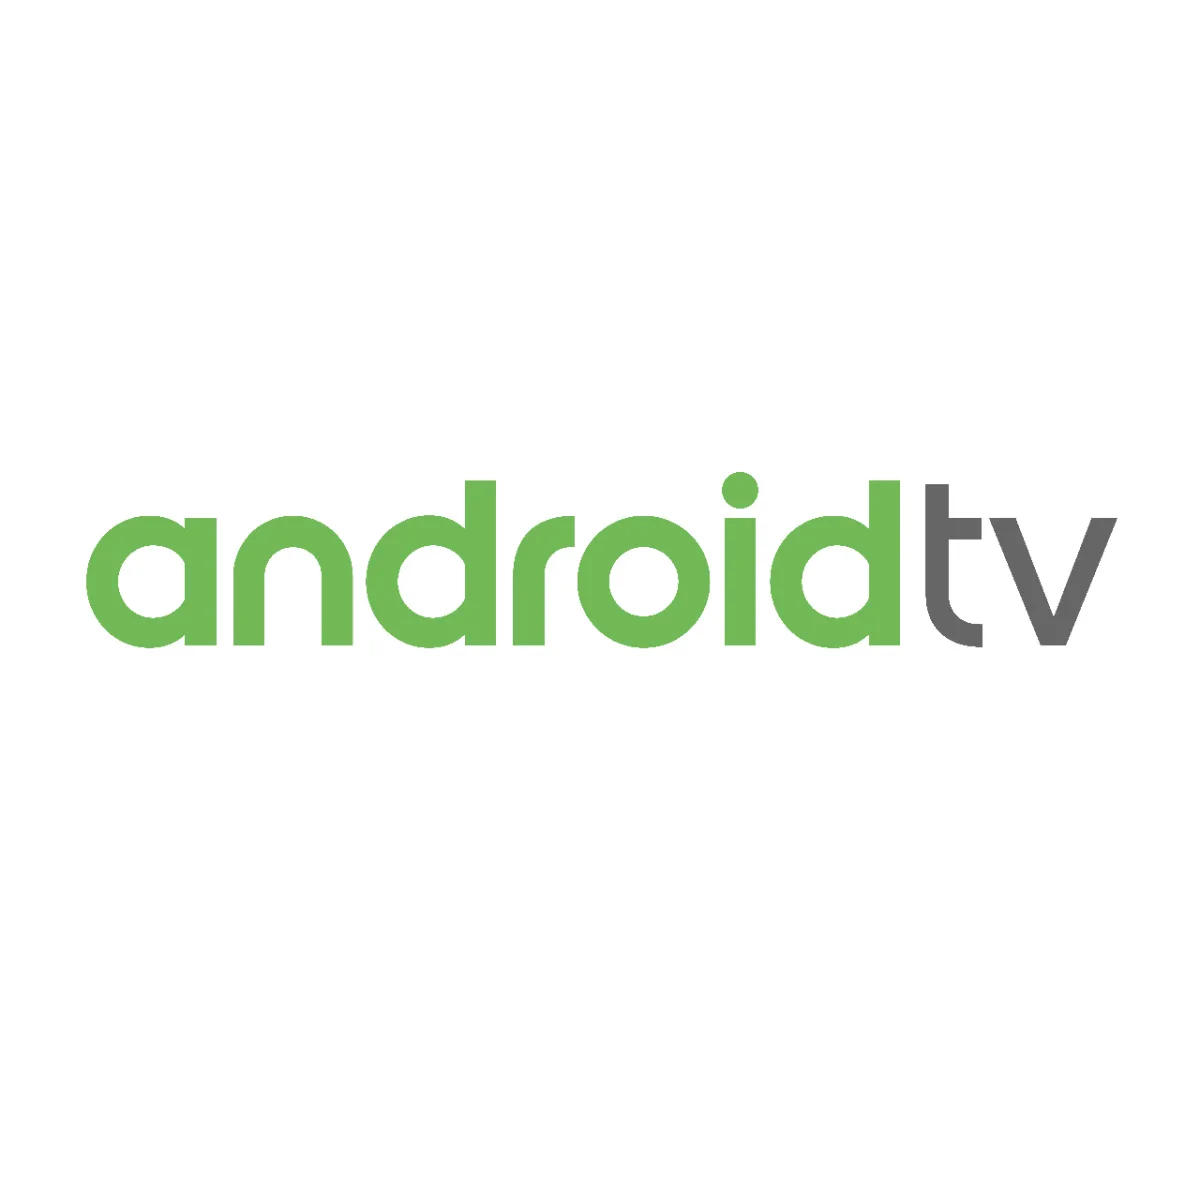 12V Smart TV, DC 12V android smart TV